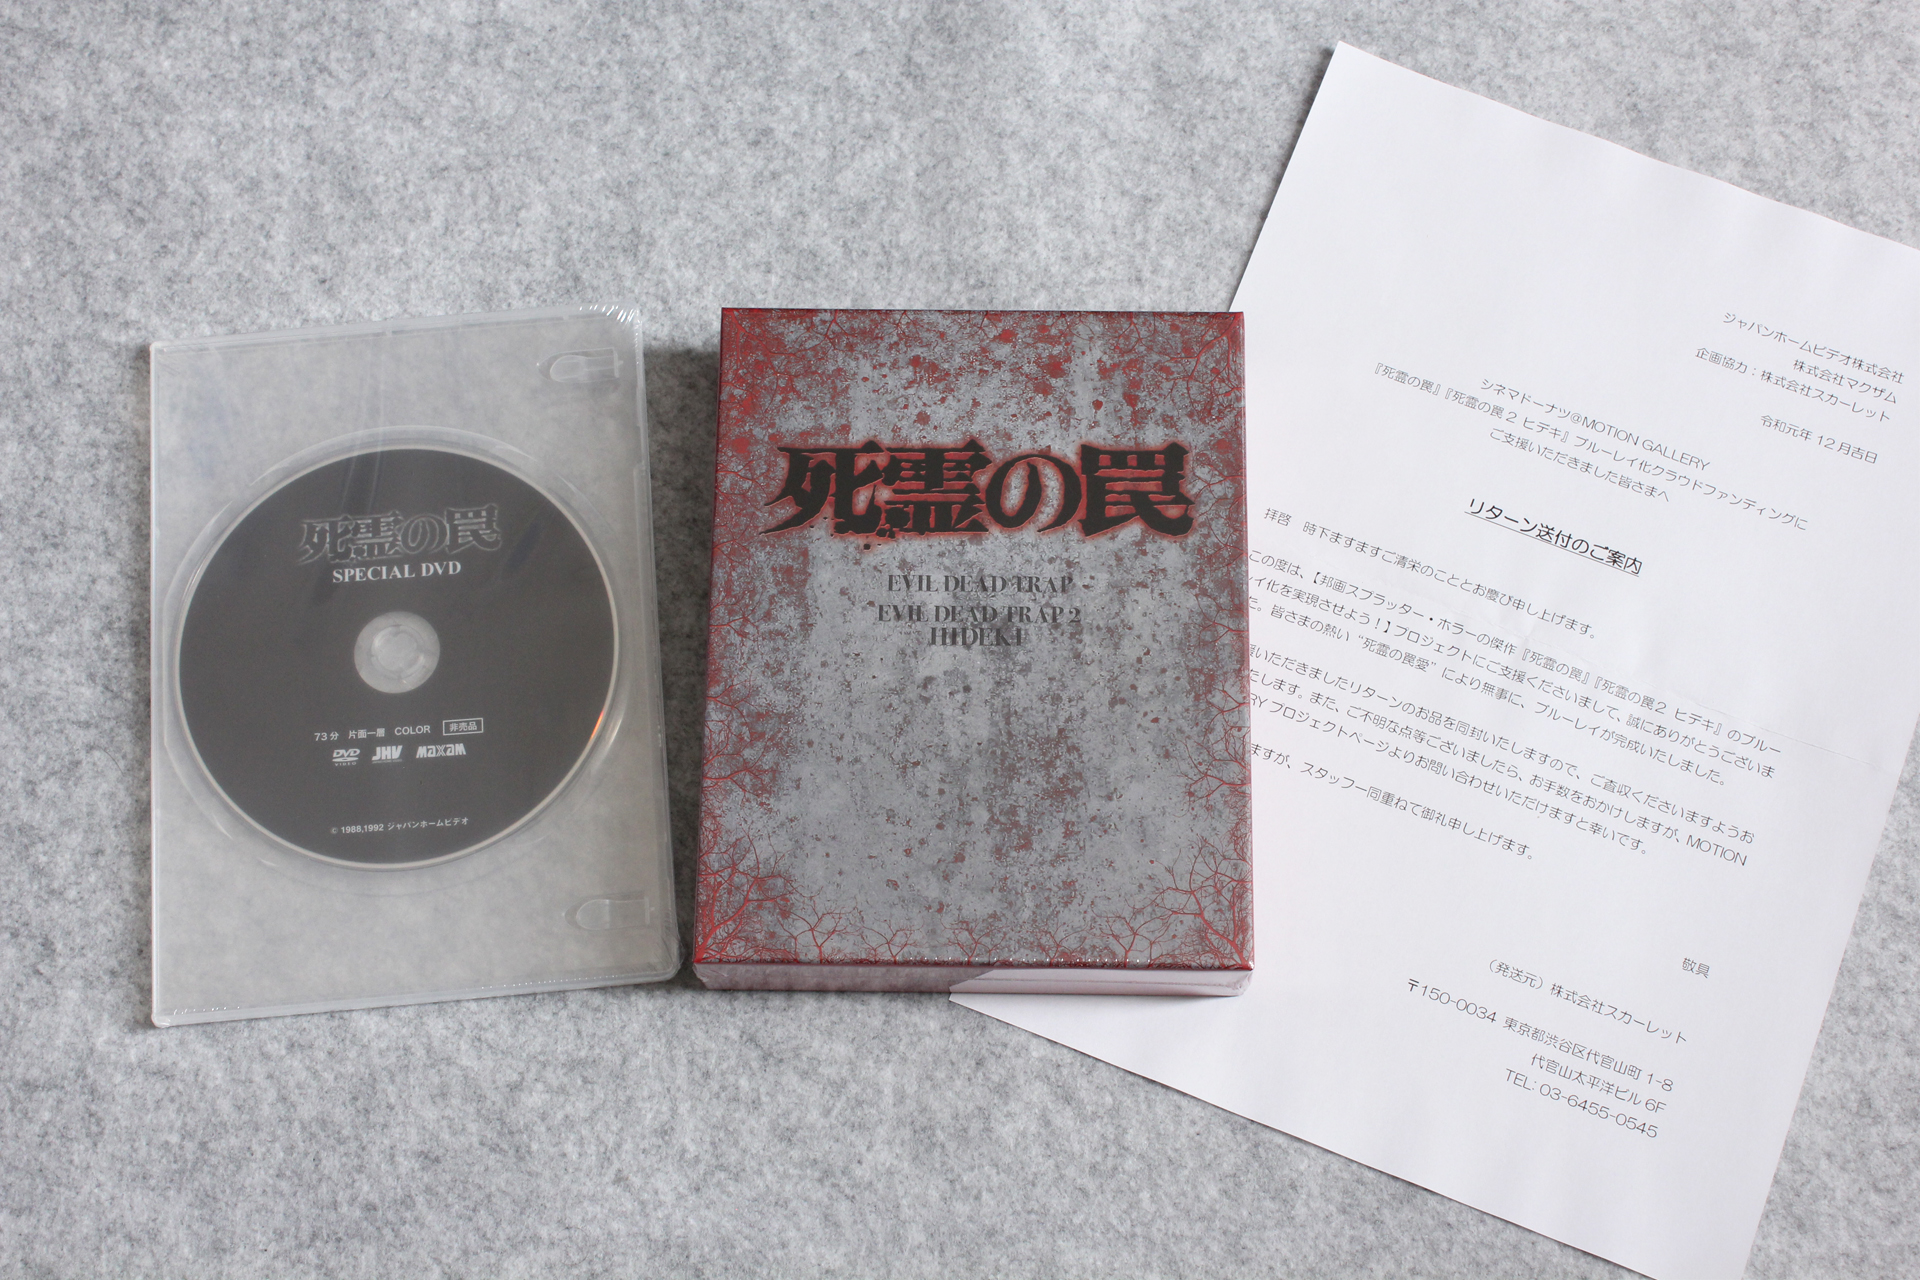 死霊の罠 死霊の罠2 ヒデキ 豪華版 Blu Ray 2枚組box が届いたので記念写真 クラウドファンディング ブルーレイ化プロジェクト支援者特典 録画地獄